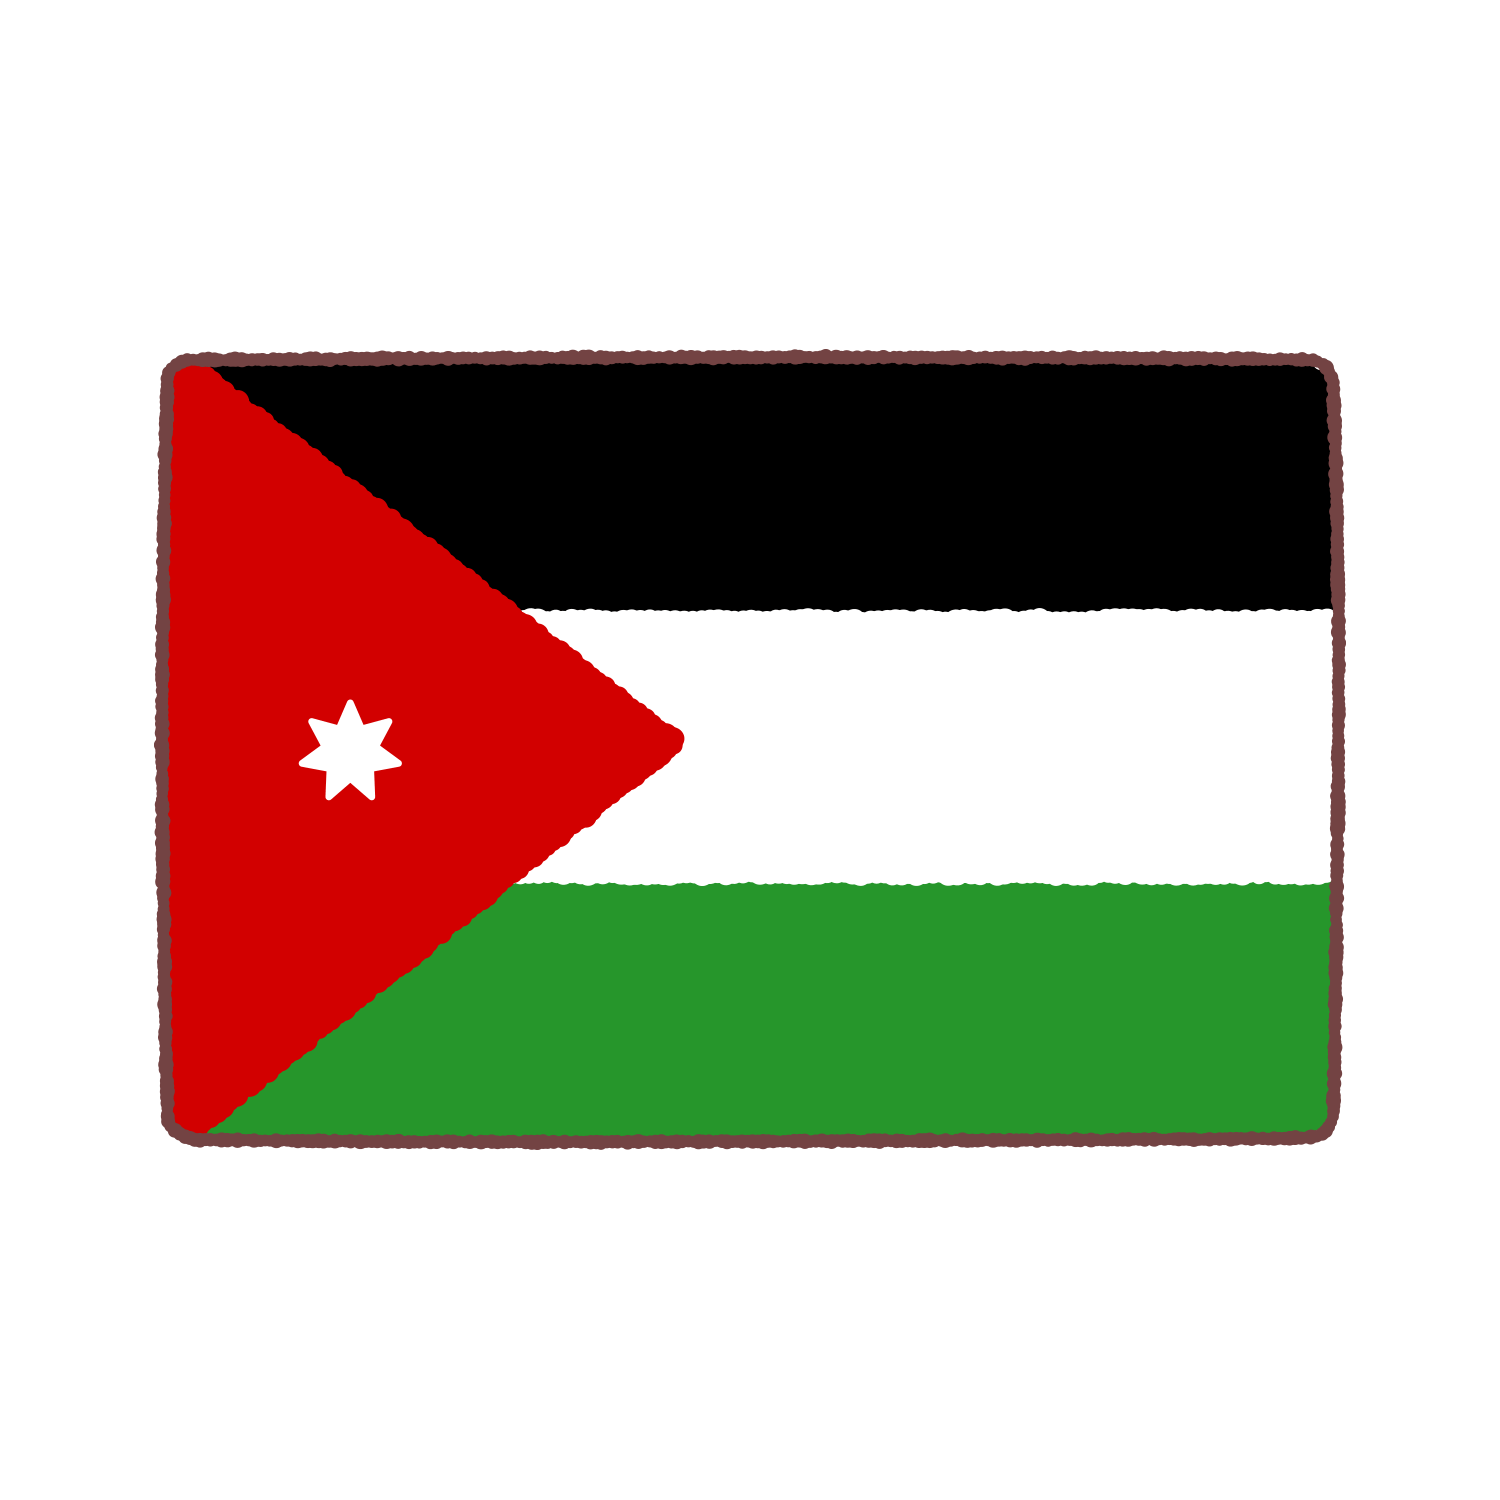 ヨルダン国旗のイラスト